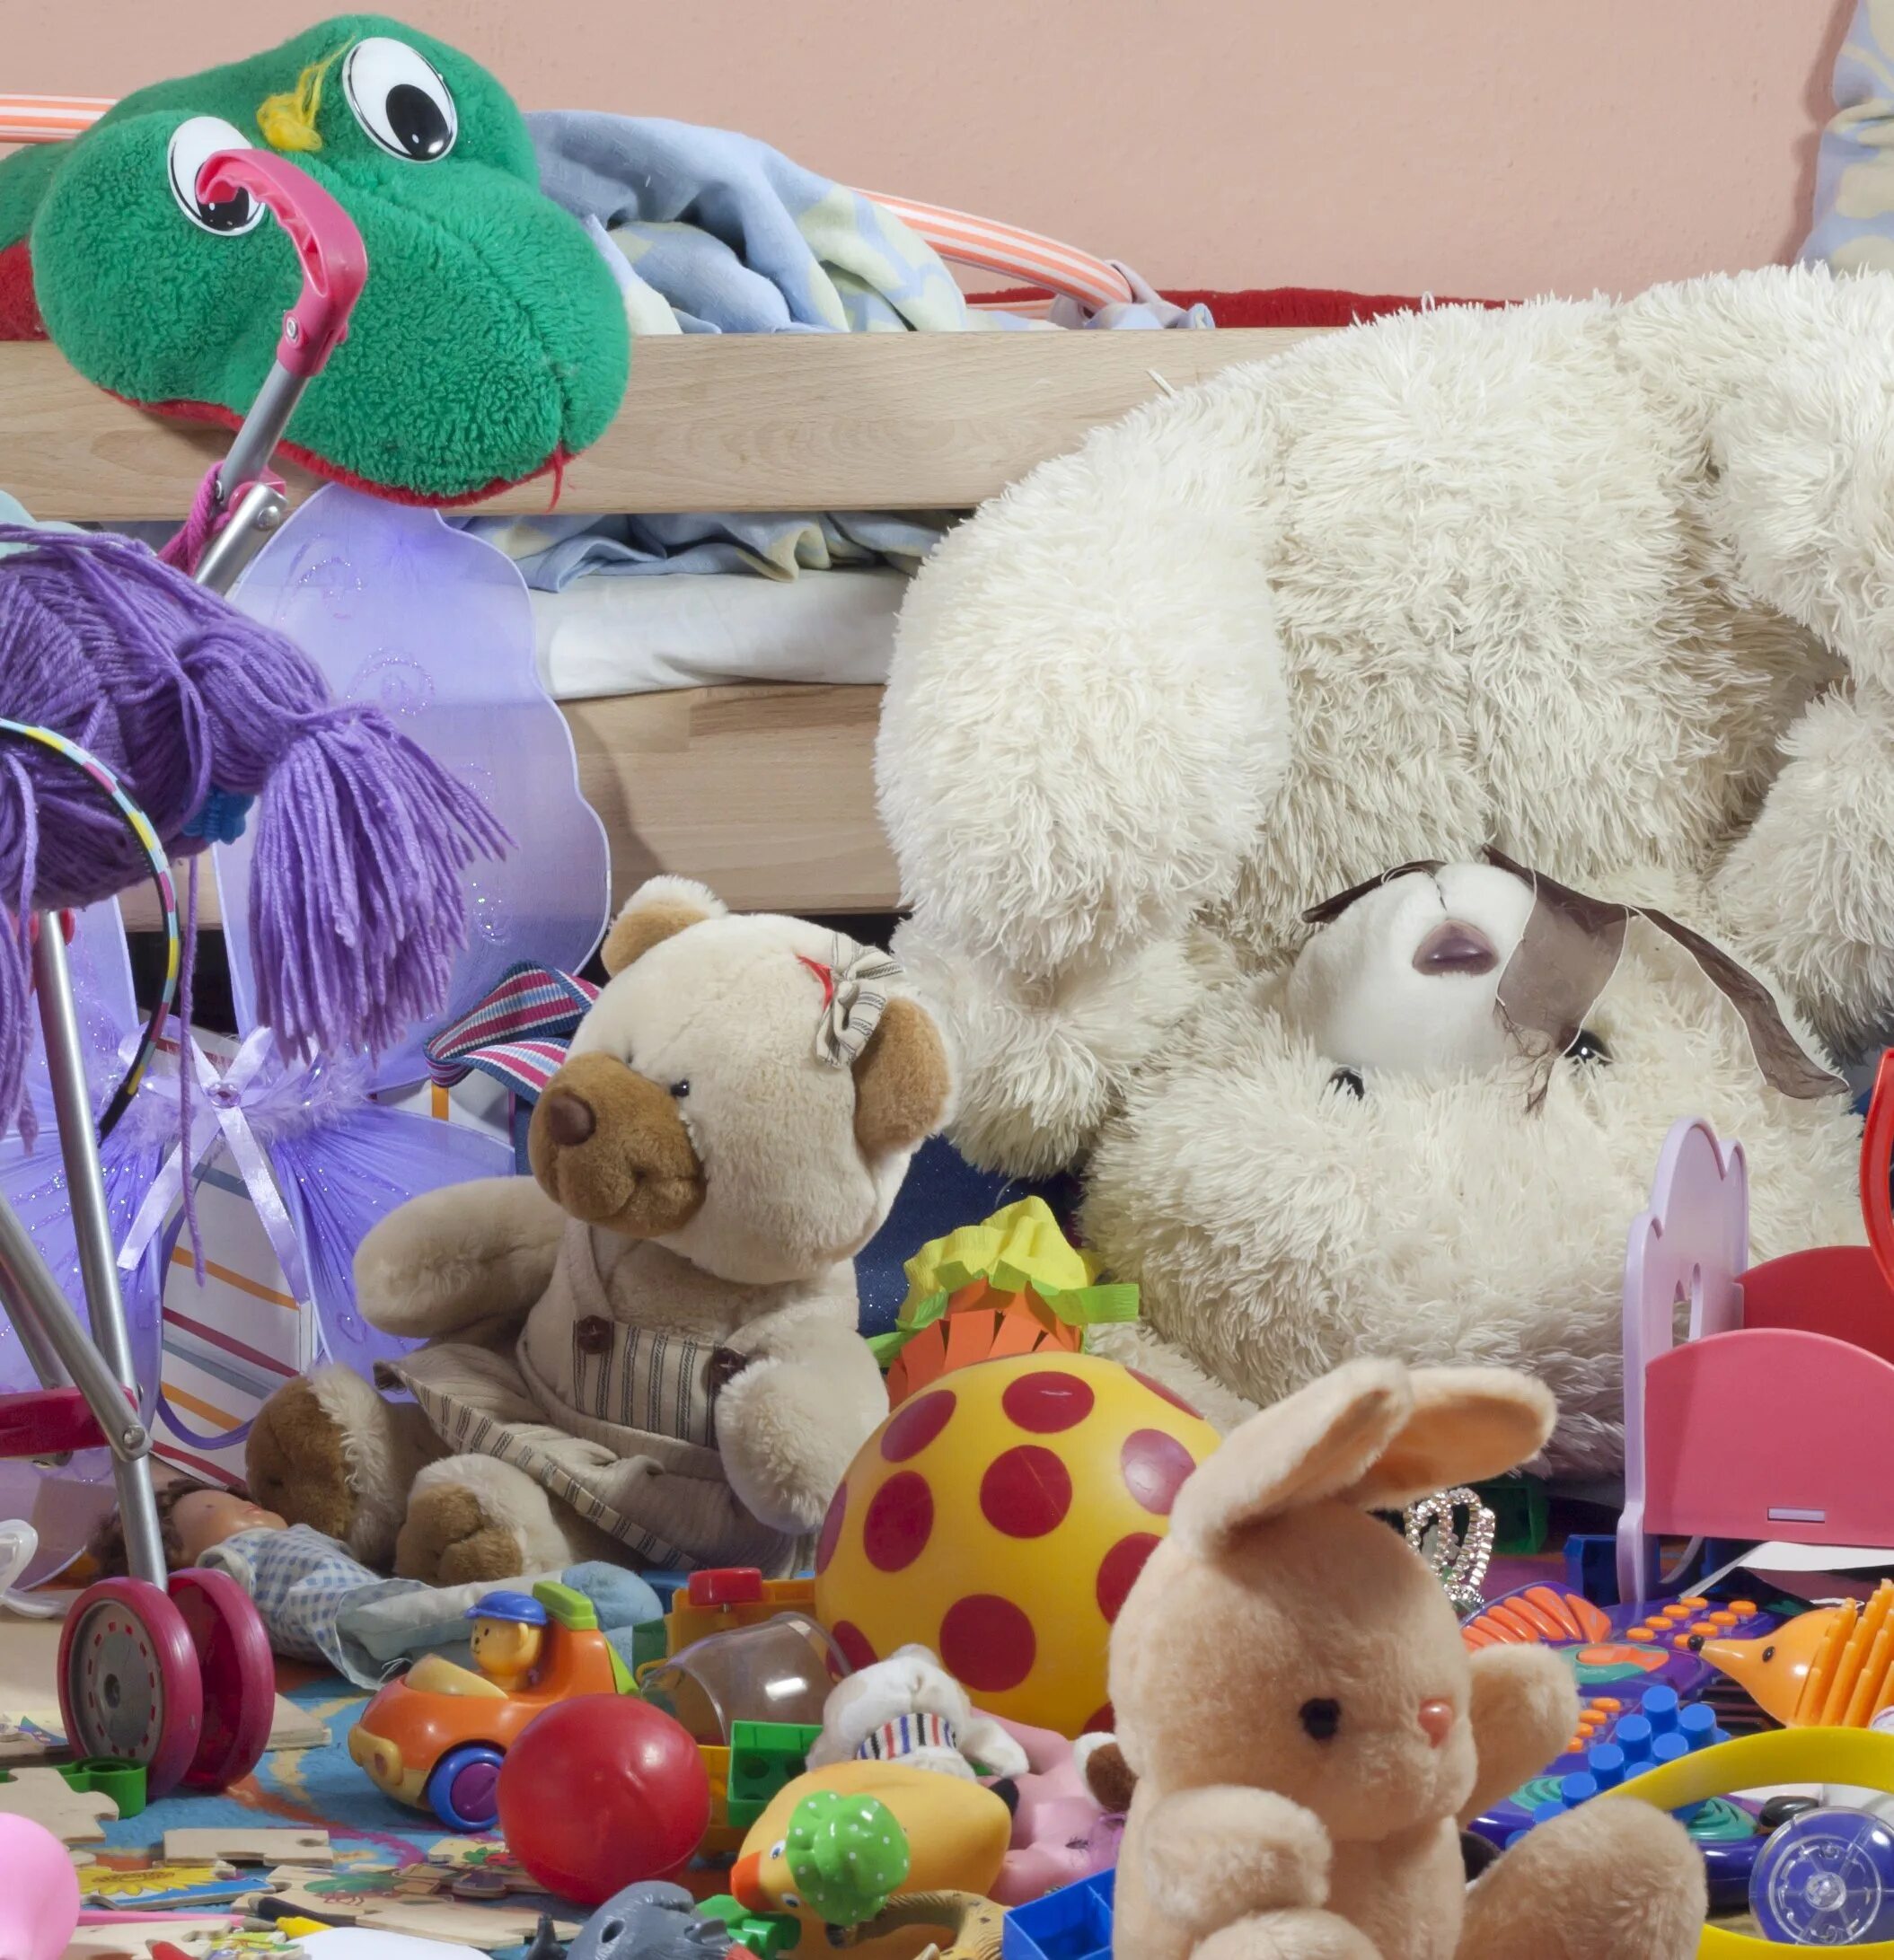 Включи картинку игрушку. Много игрушек. Детские игрушки. Много игрушек для детей. Куча мягких игрушек.